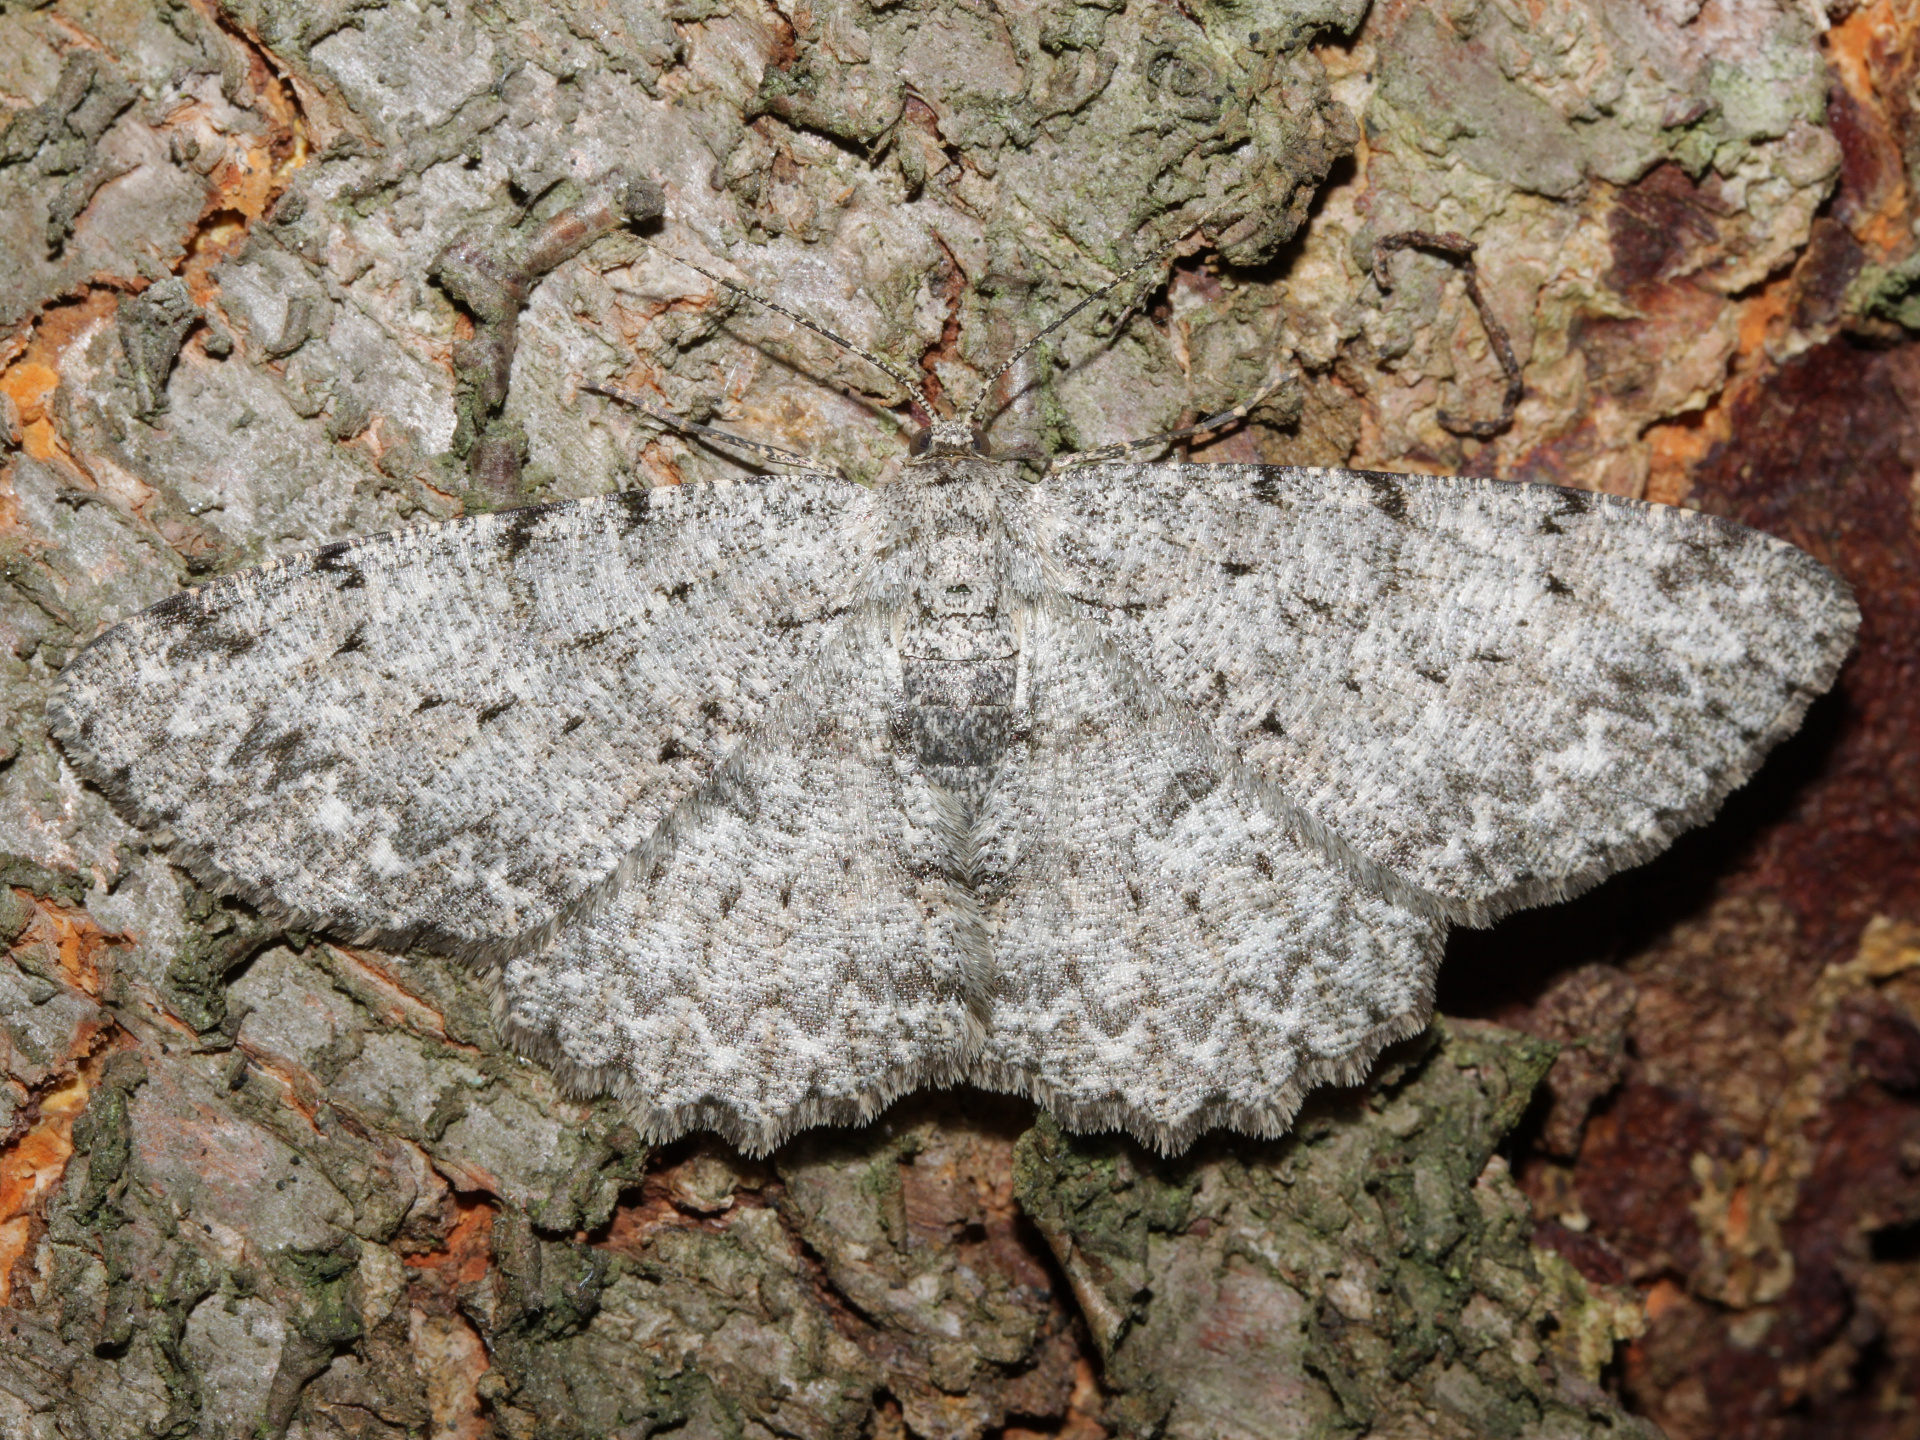 Hypomecis punctinalis (Zwierzęta » Owady » Motyle i ćmy » Geometridae)